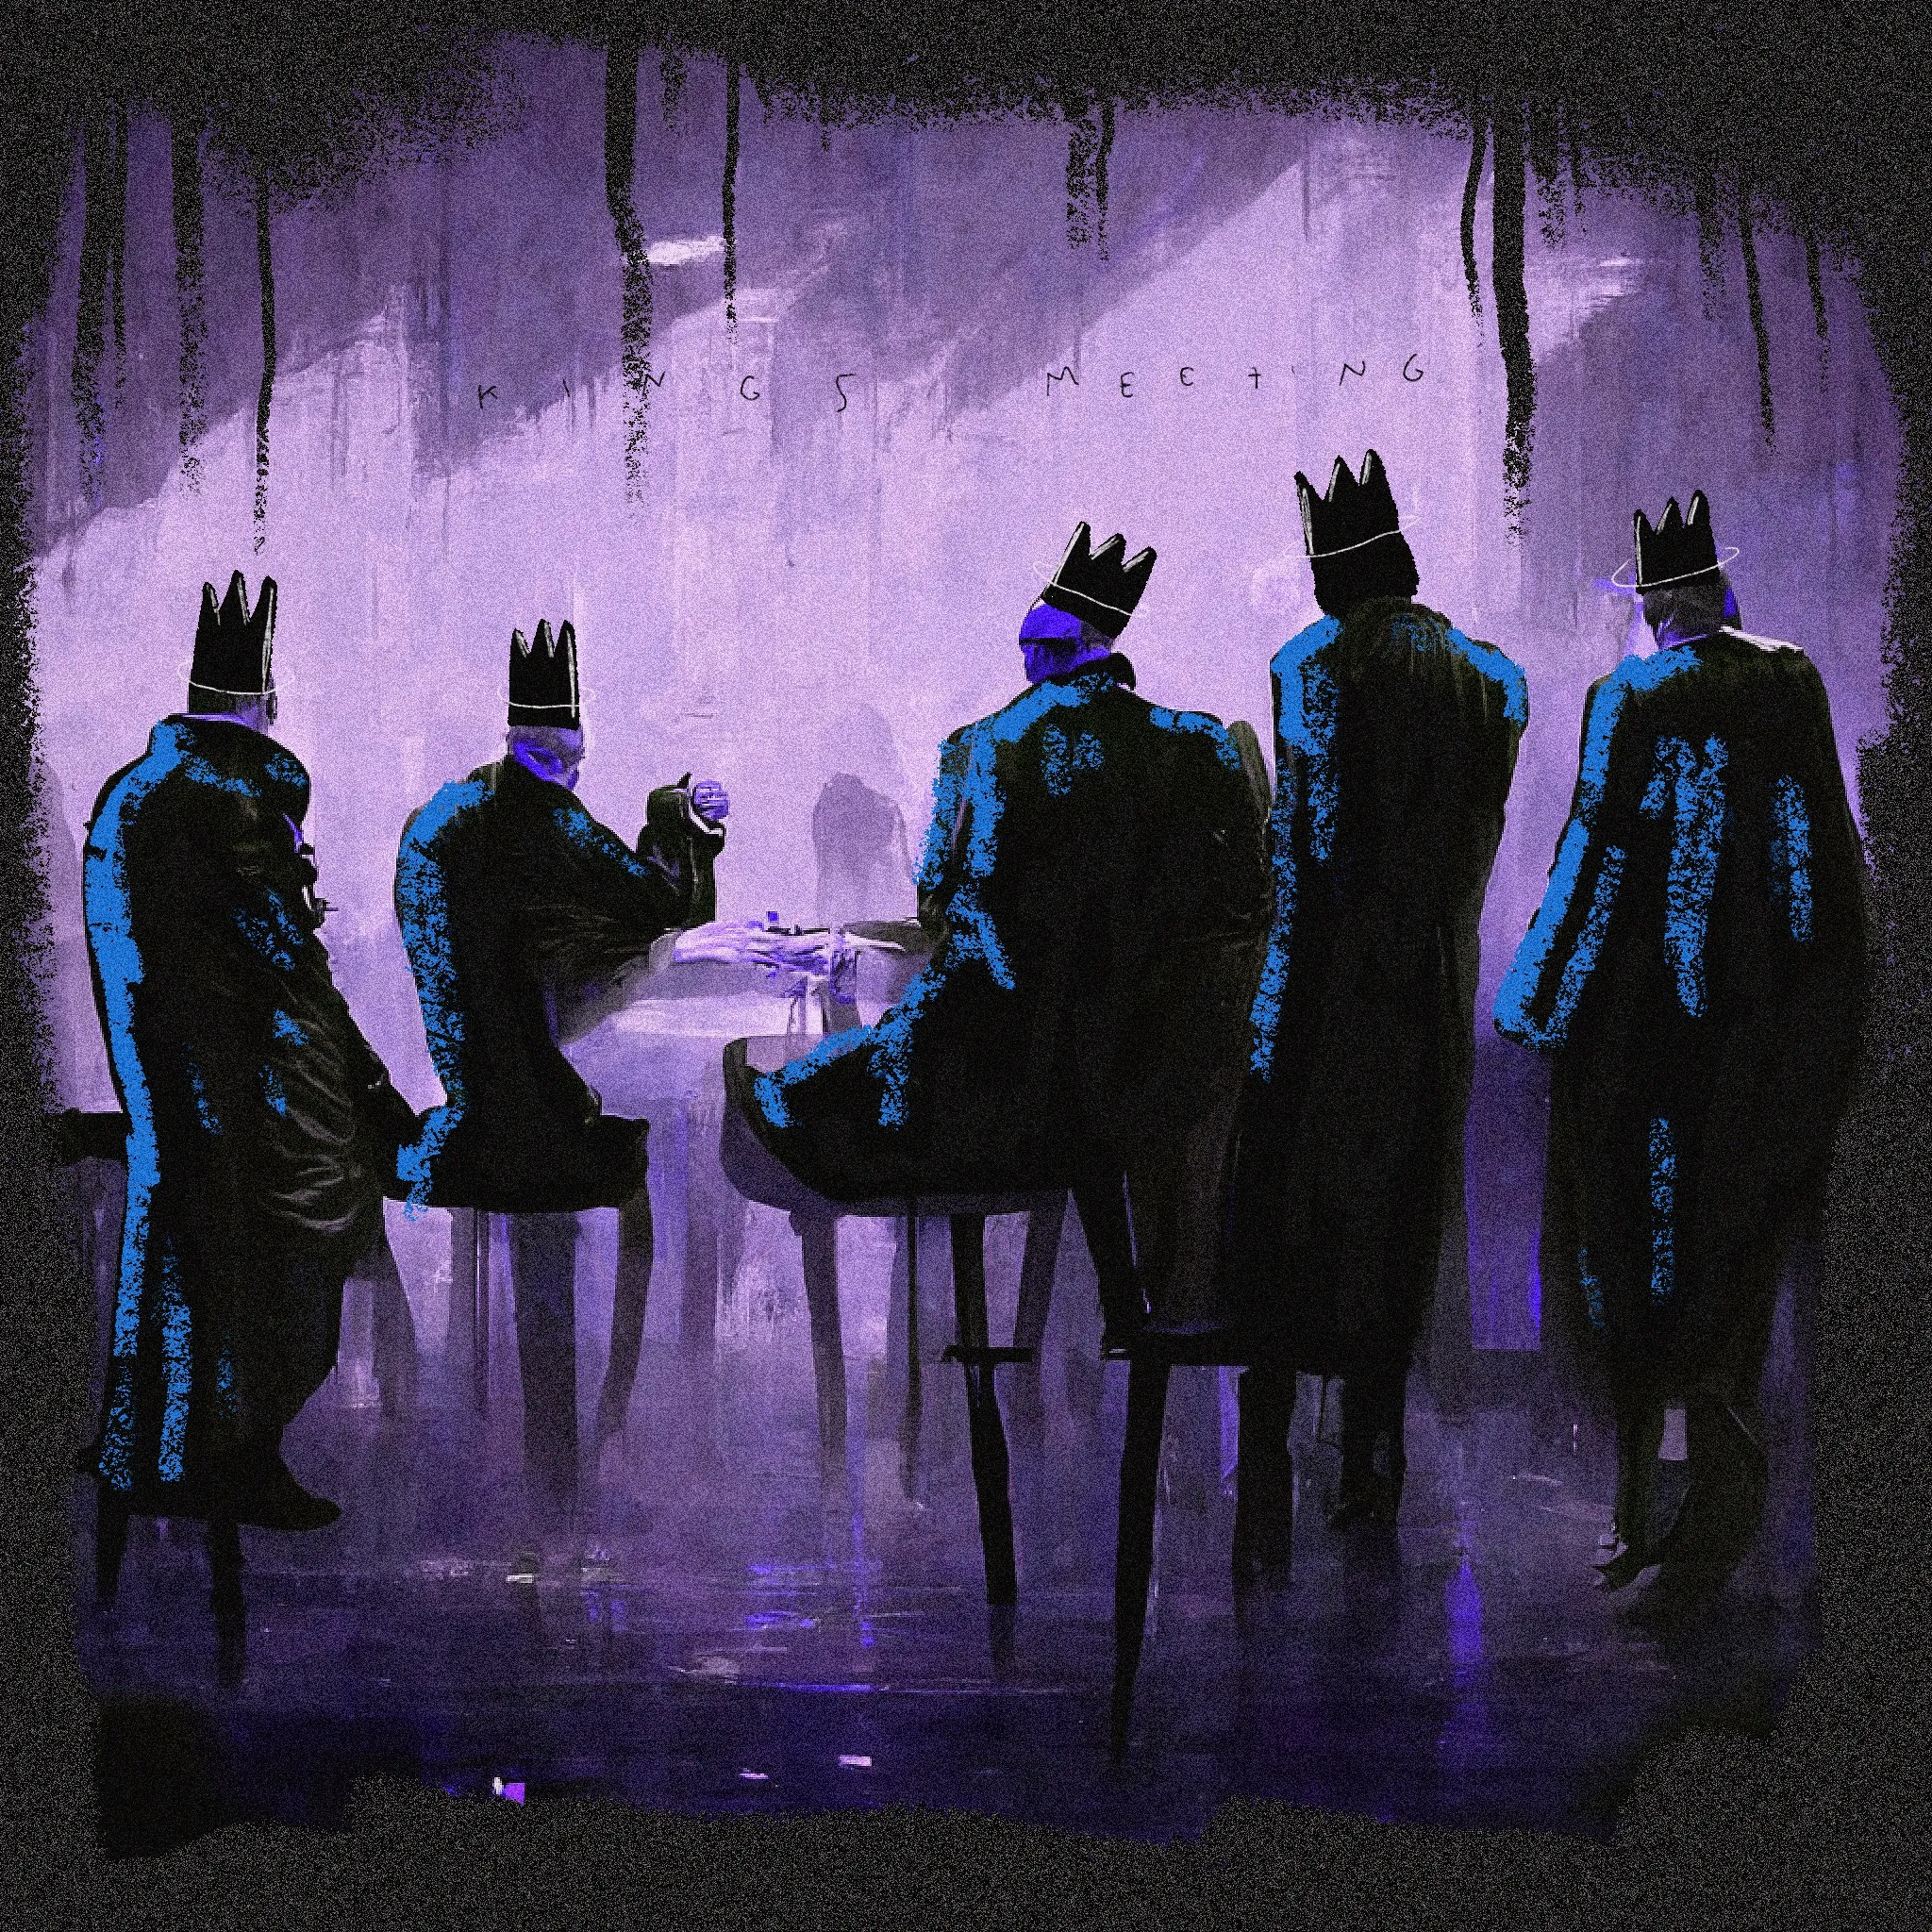 King's meeting